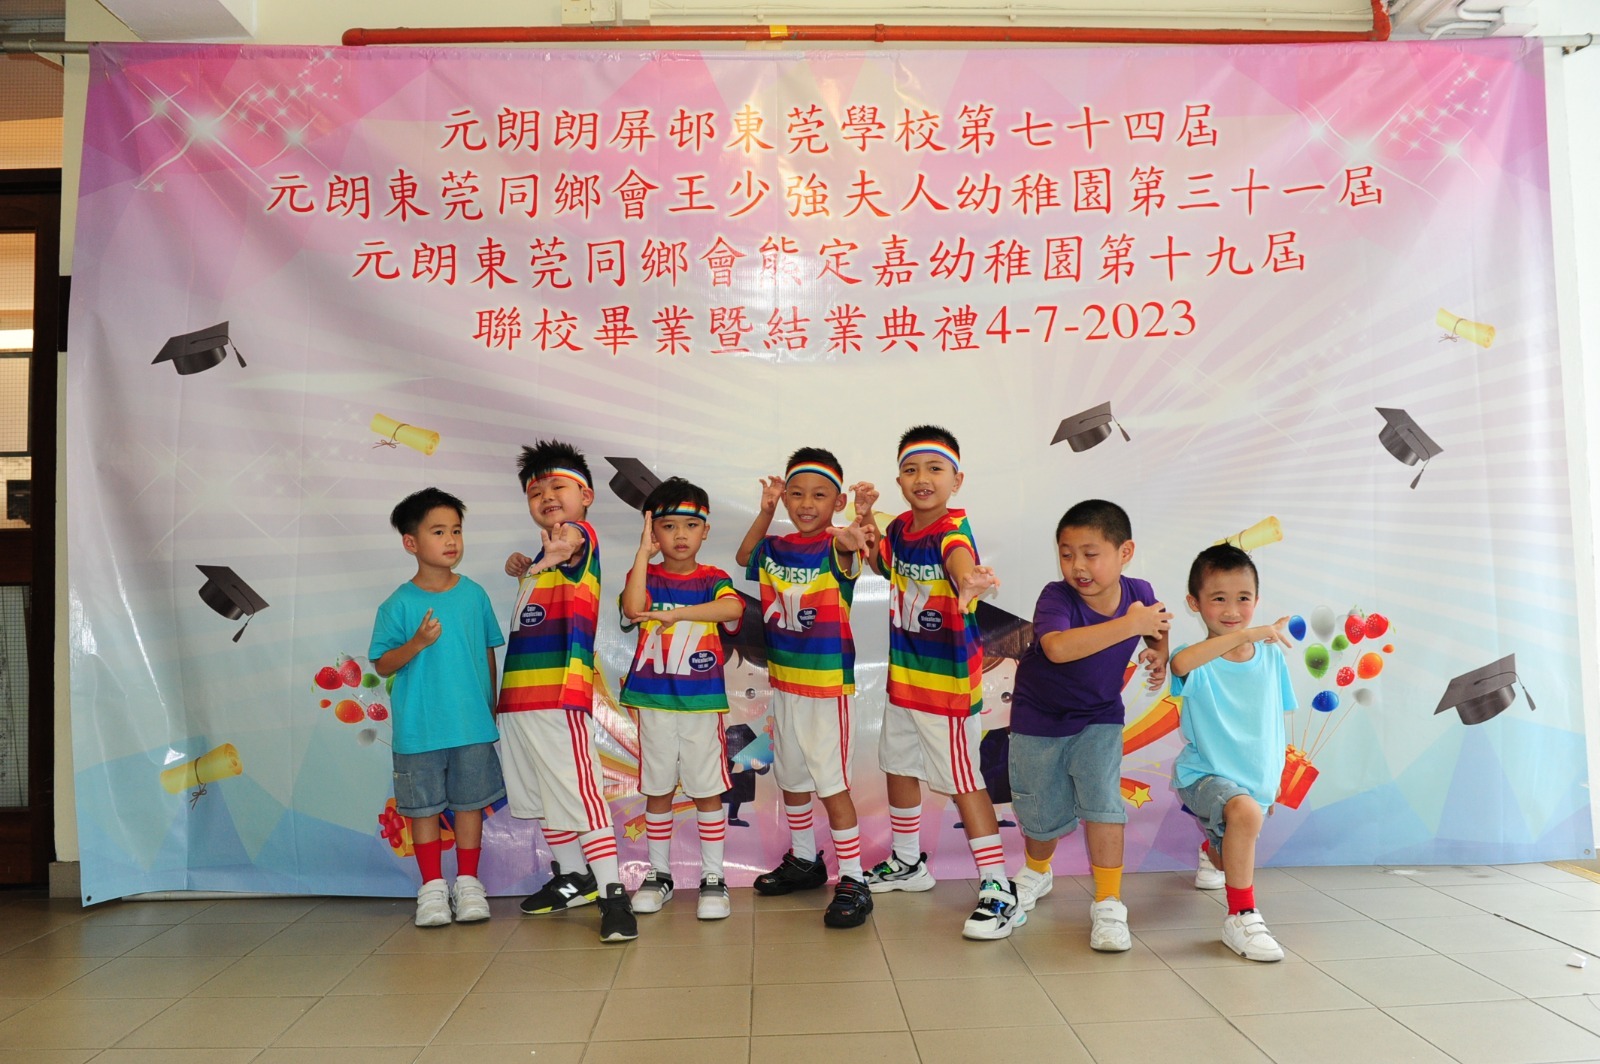 File:H.K.R.S.S. Tuen Mun Primary School part 5 in August 2023.jpg